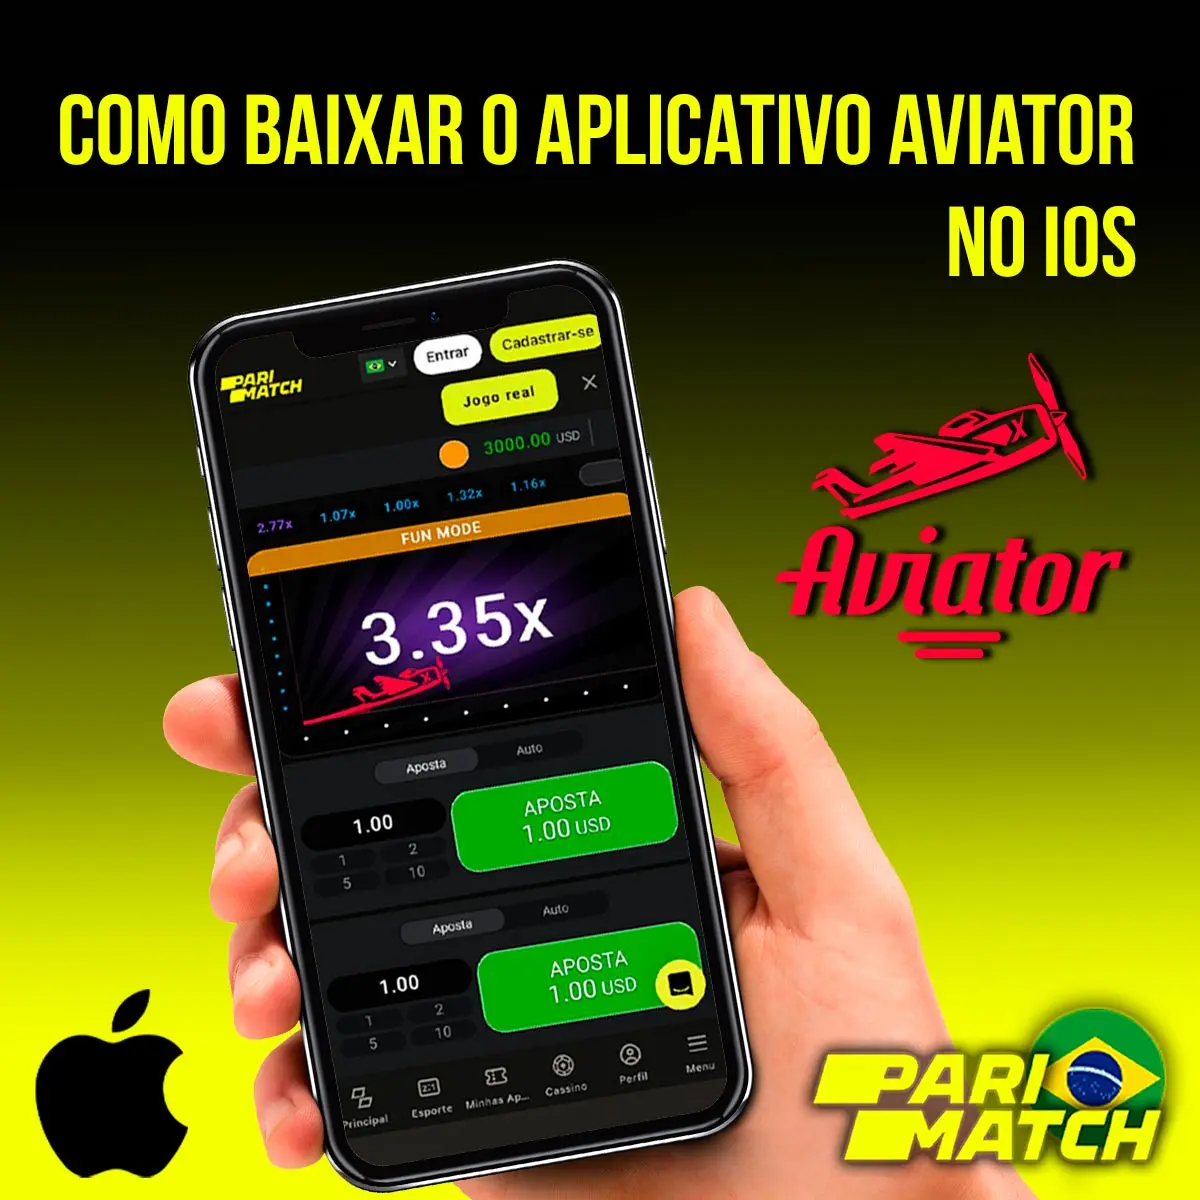 Aplicativo móvel Aviator para iOS da casa de apostas Parimatch no Brasil